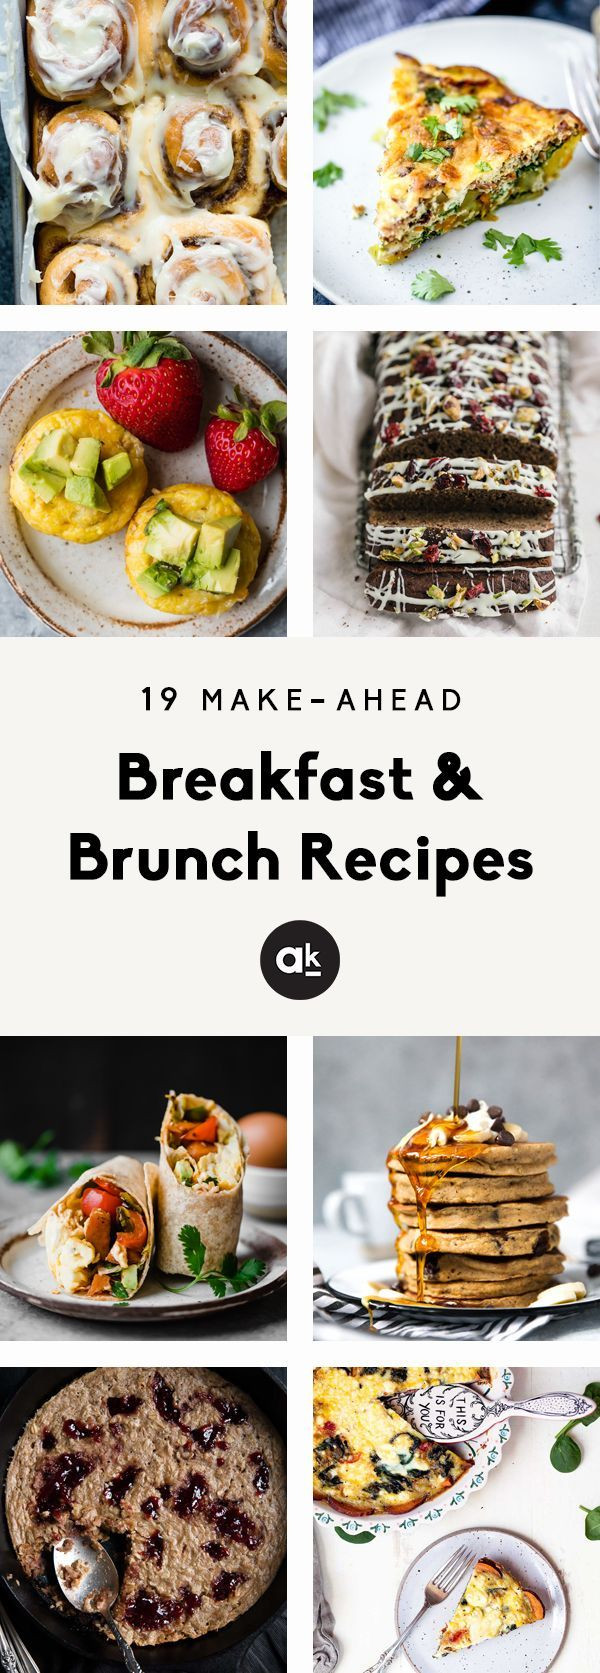 Vegan Brunch Recipes Make Ahead
 Make Ahead Breakfast & Brunch Recipes